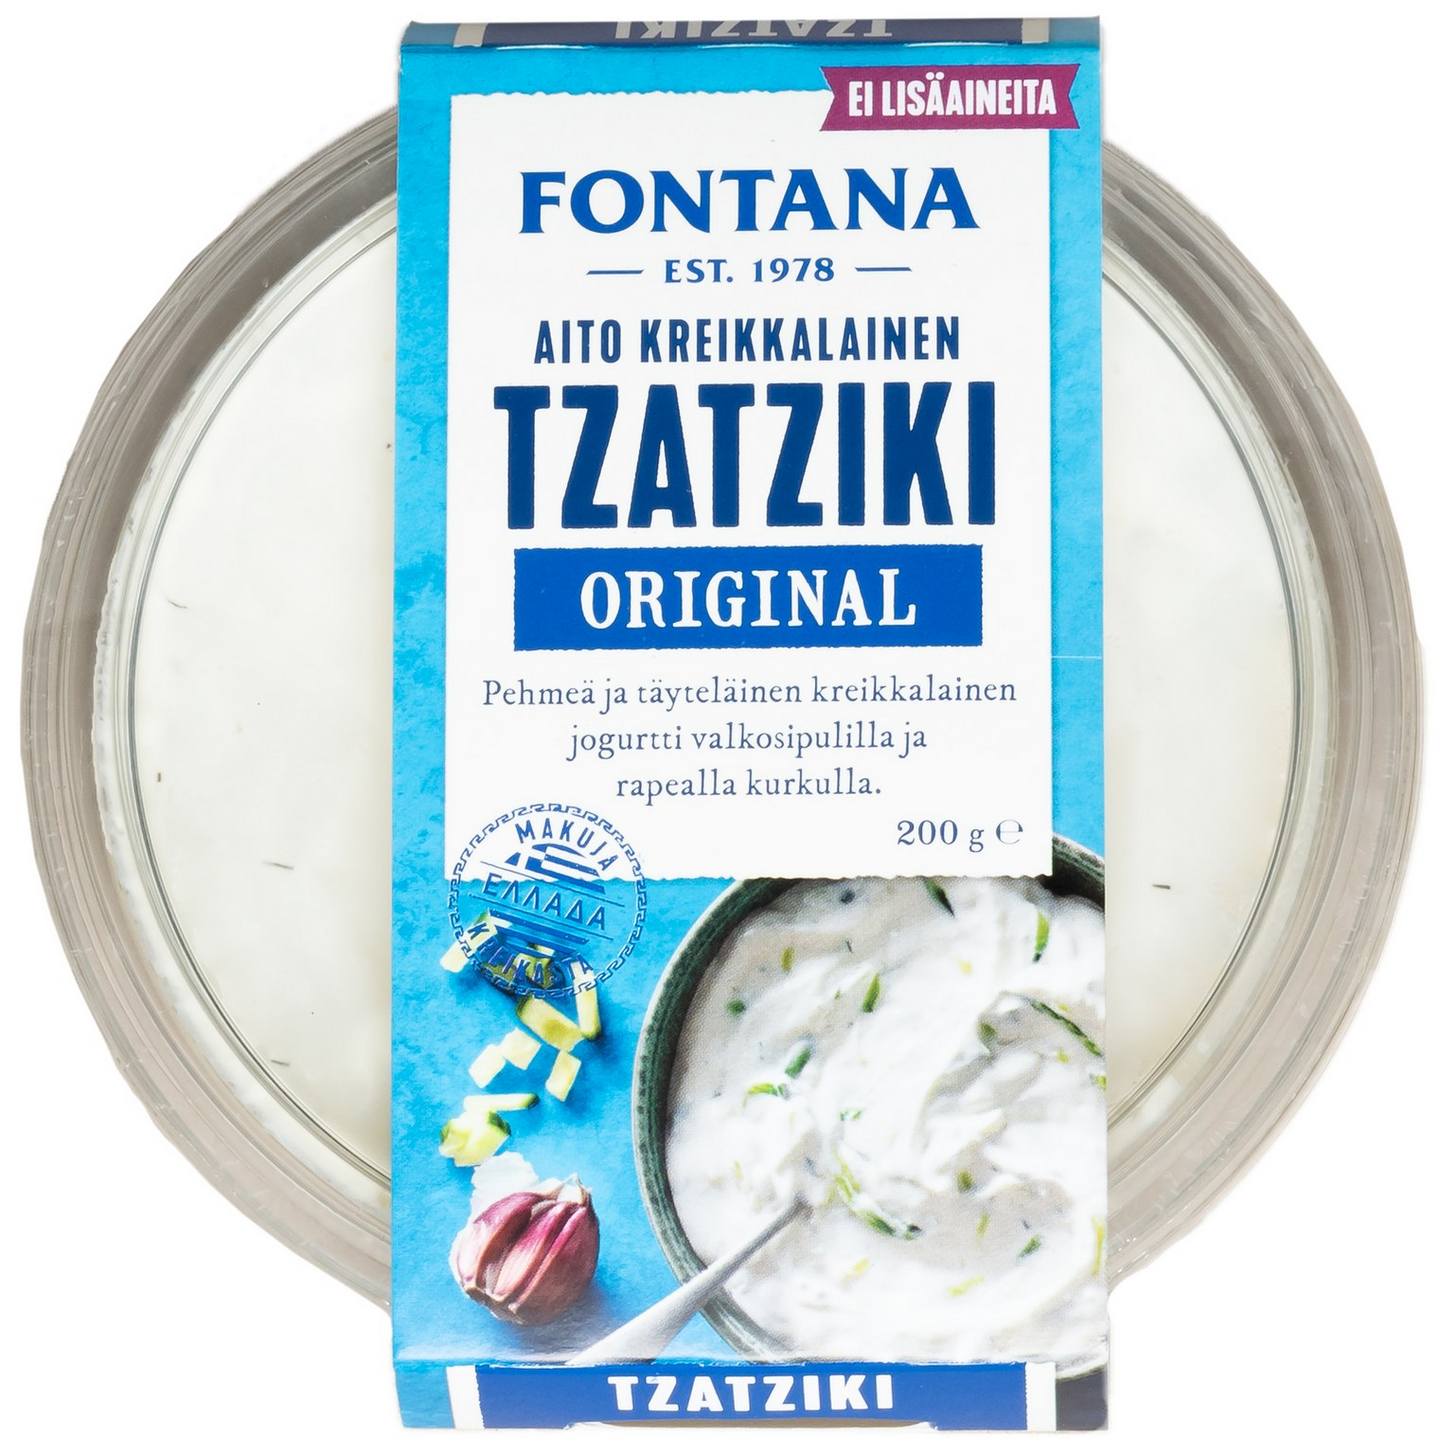 Fontana aito kreikkalainen original tzatziki 200g